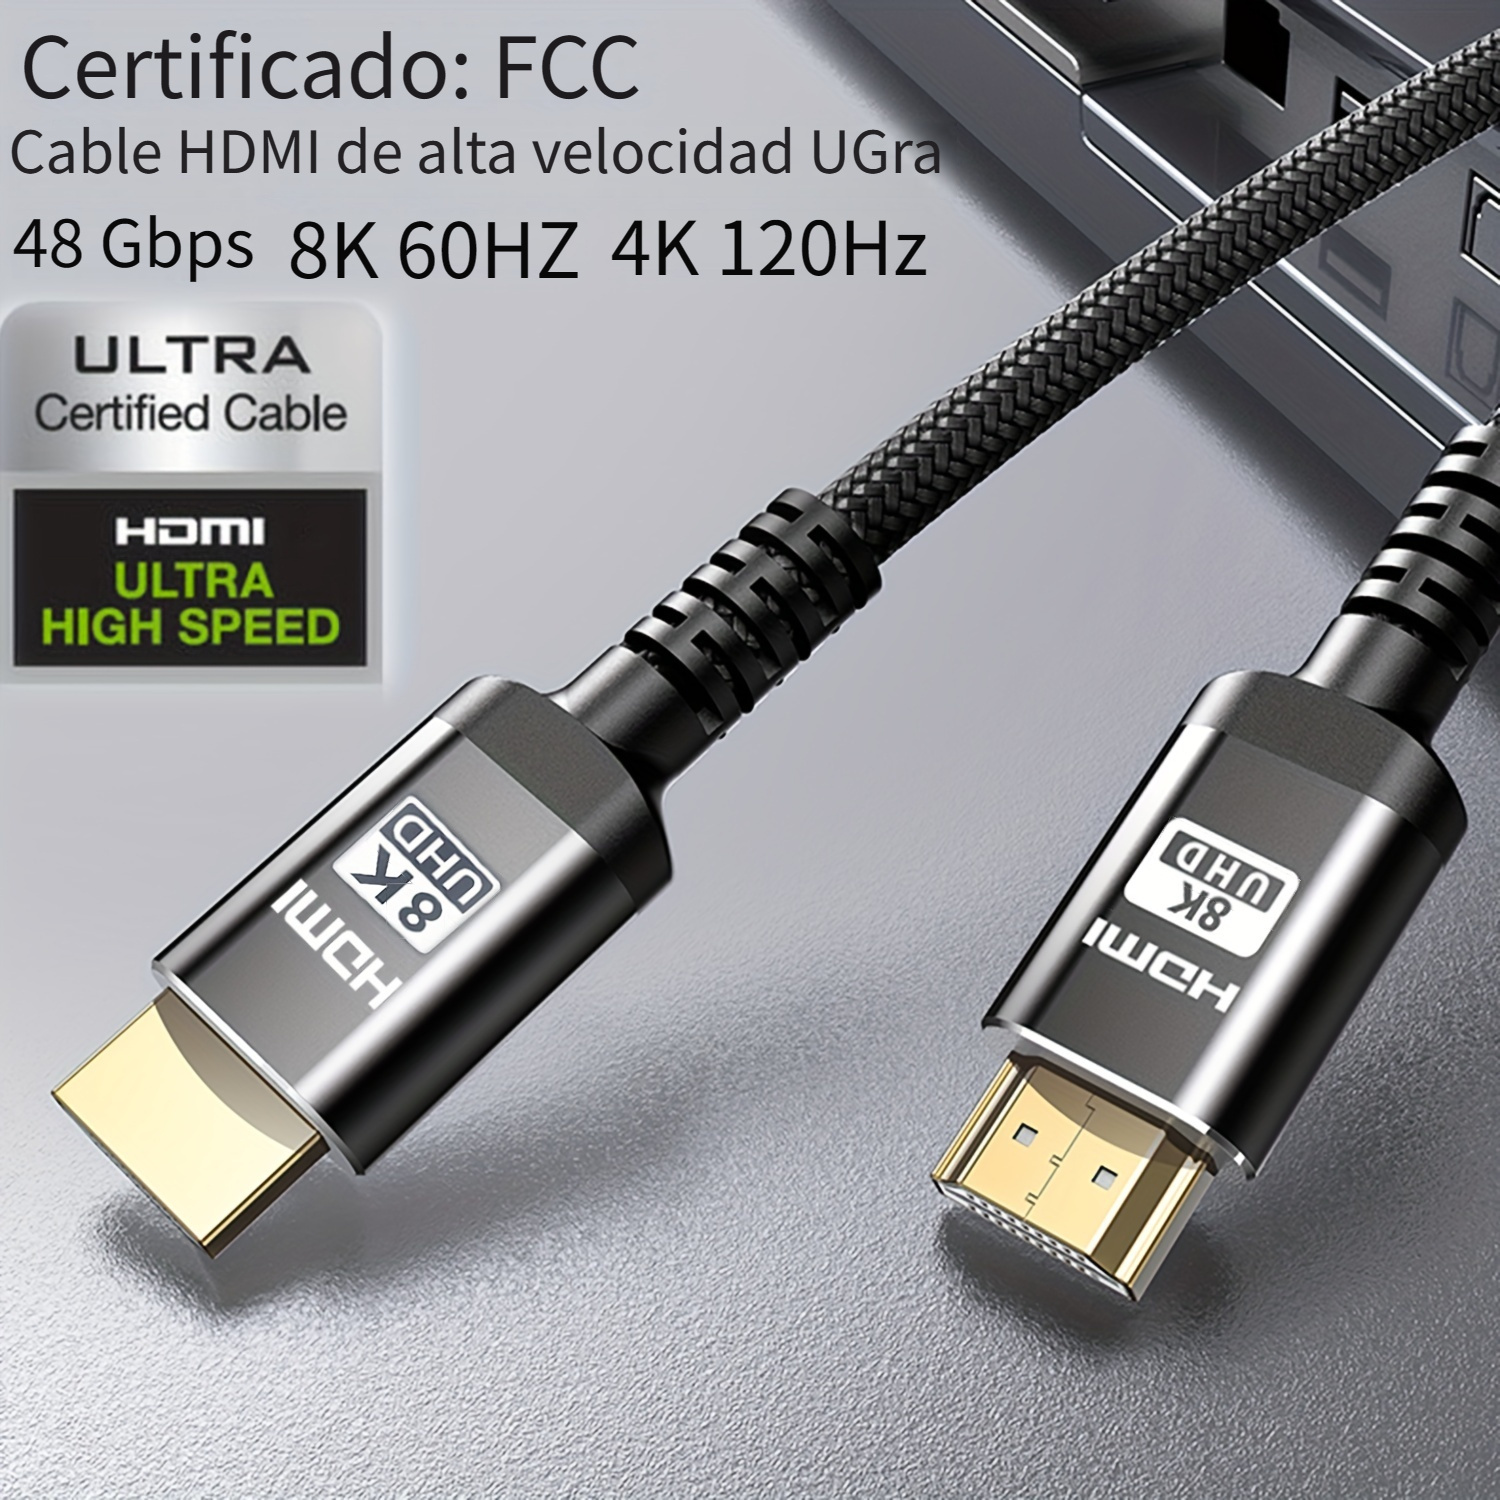 Cable HDMI 15 metros - Soporta 3D Full Ultra HD 4K 2160p@30Hz